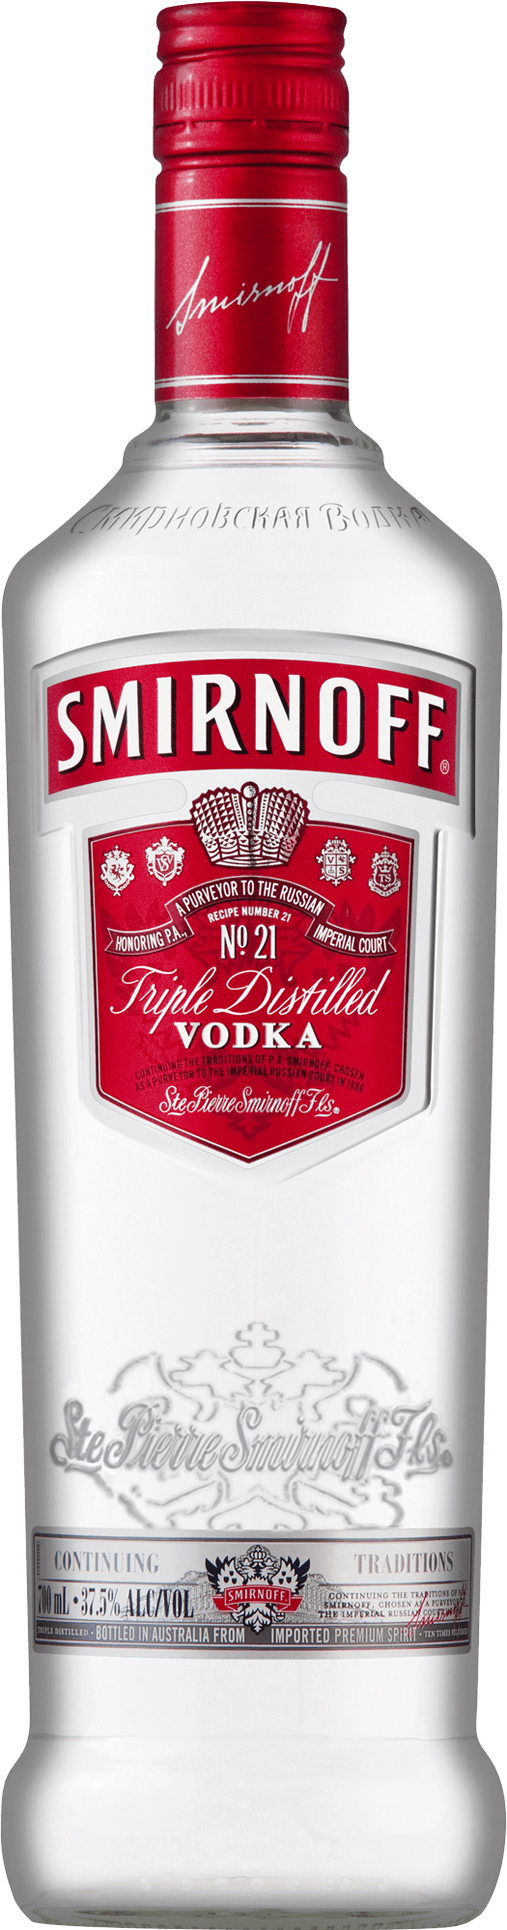 Smirnoff - Vodka / 700mL